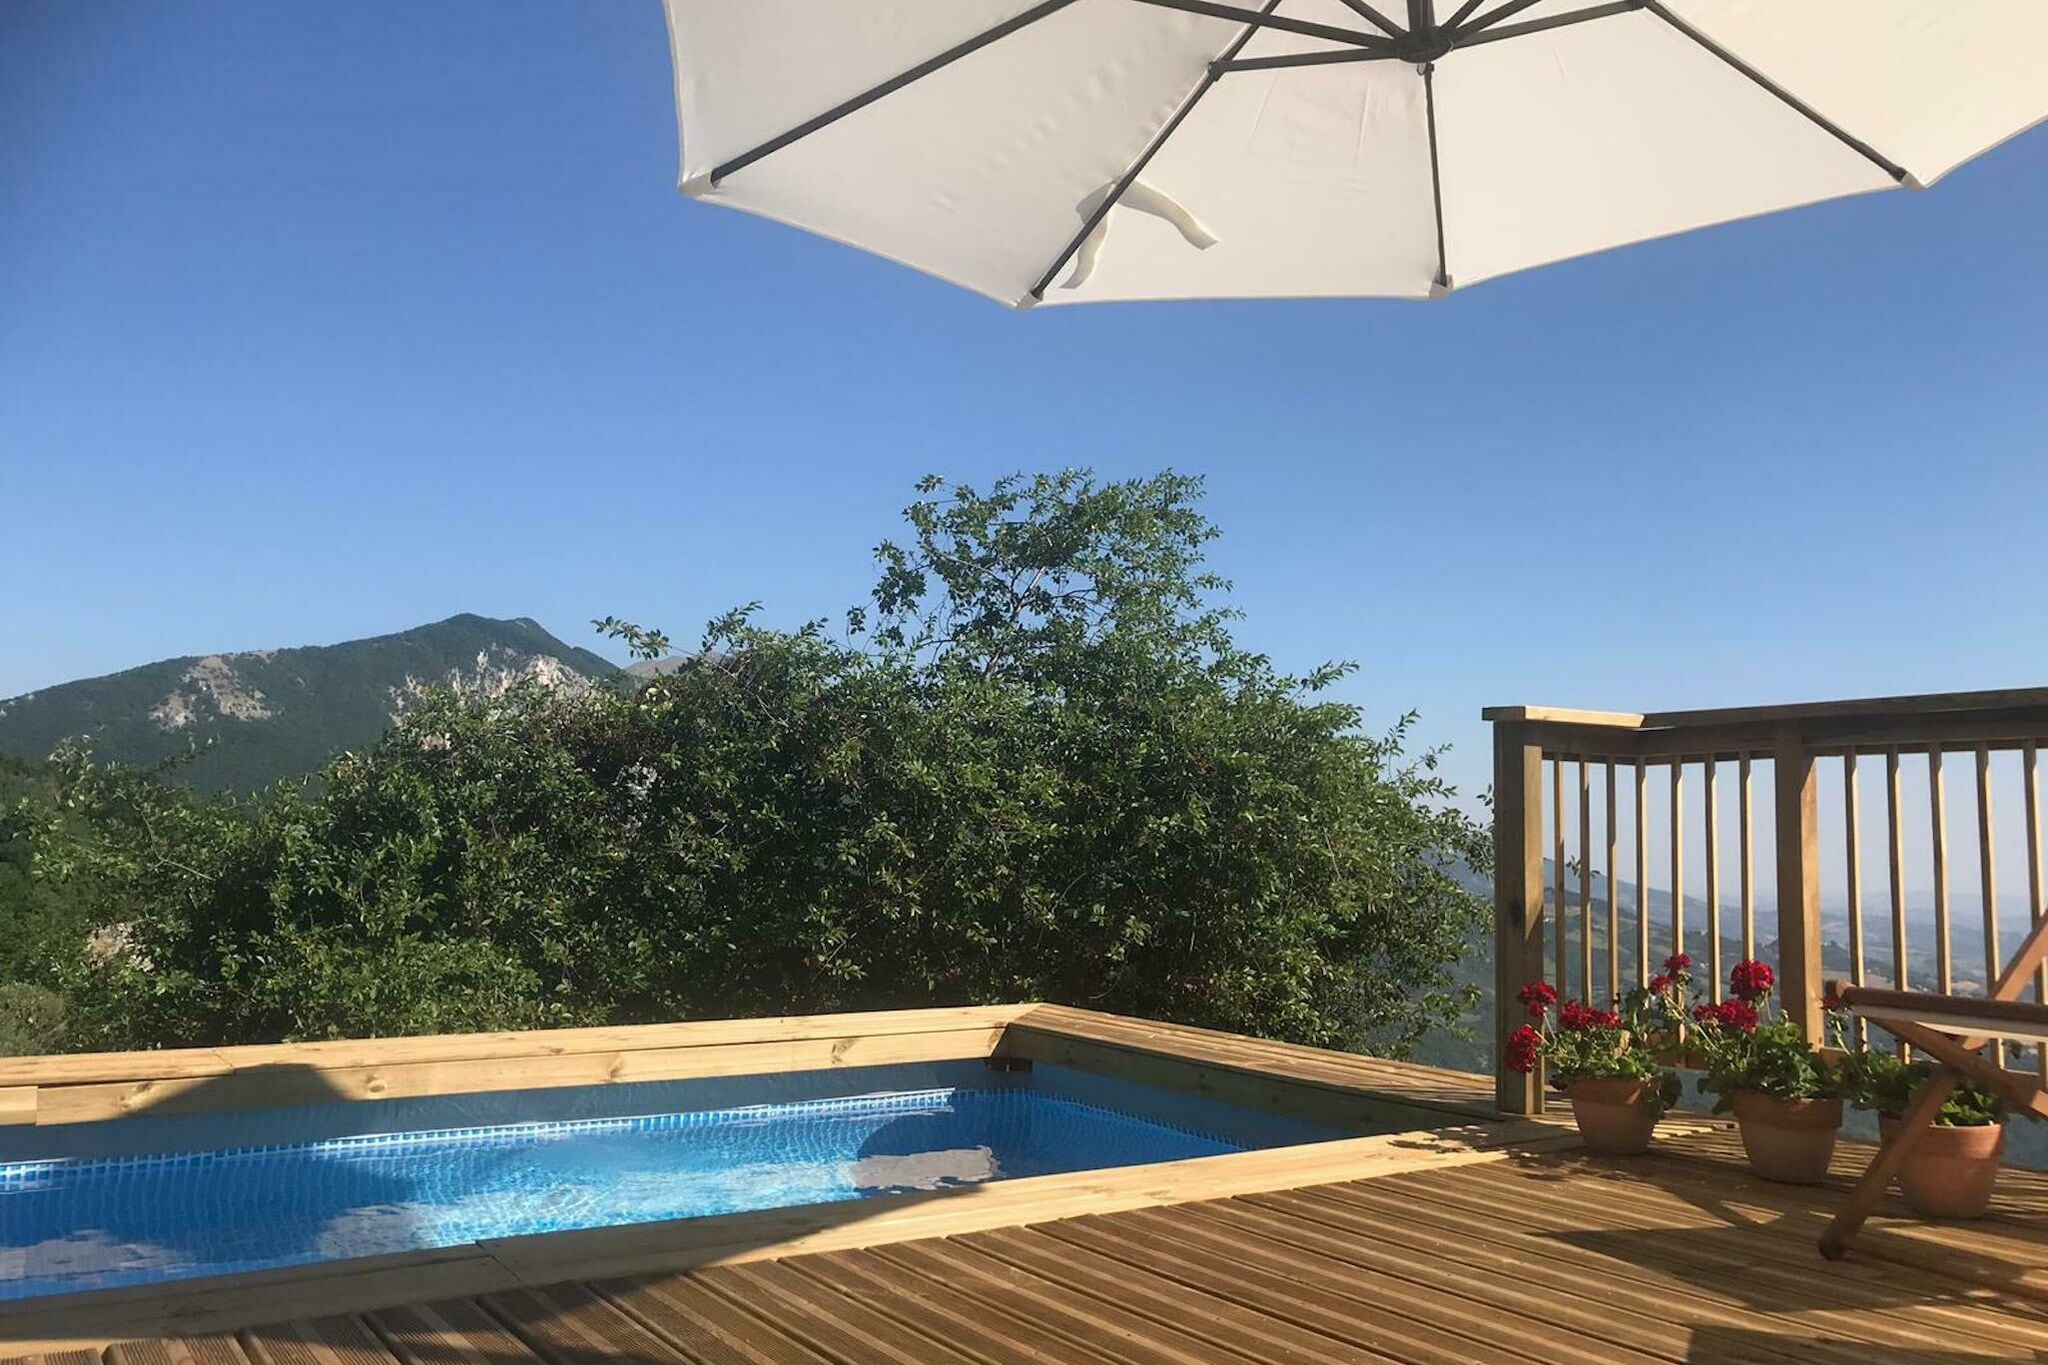 Vrijstaand vakantiehuis in de bergen van Corvara met zwembad